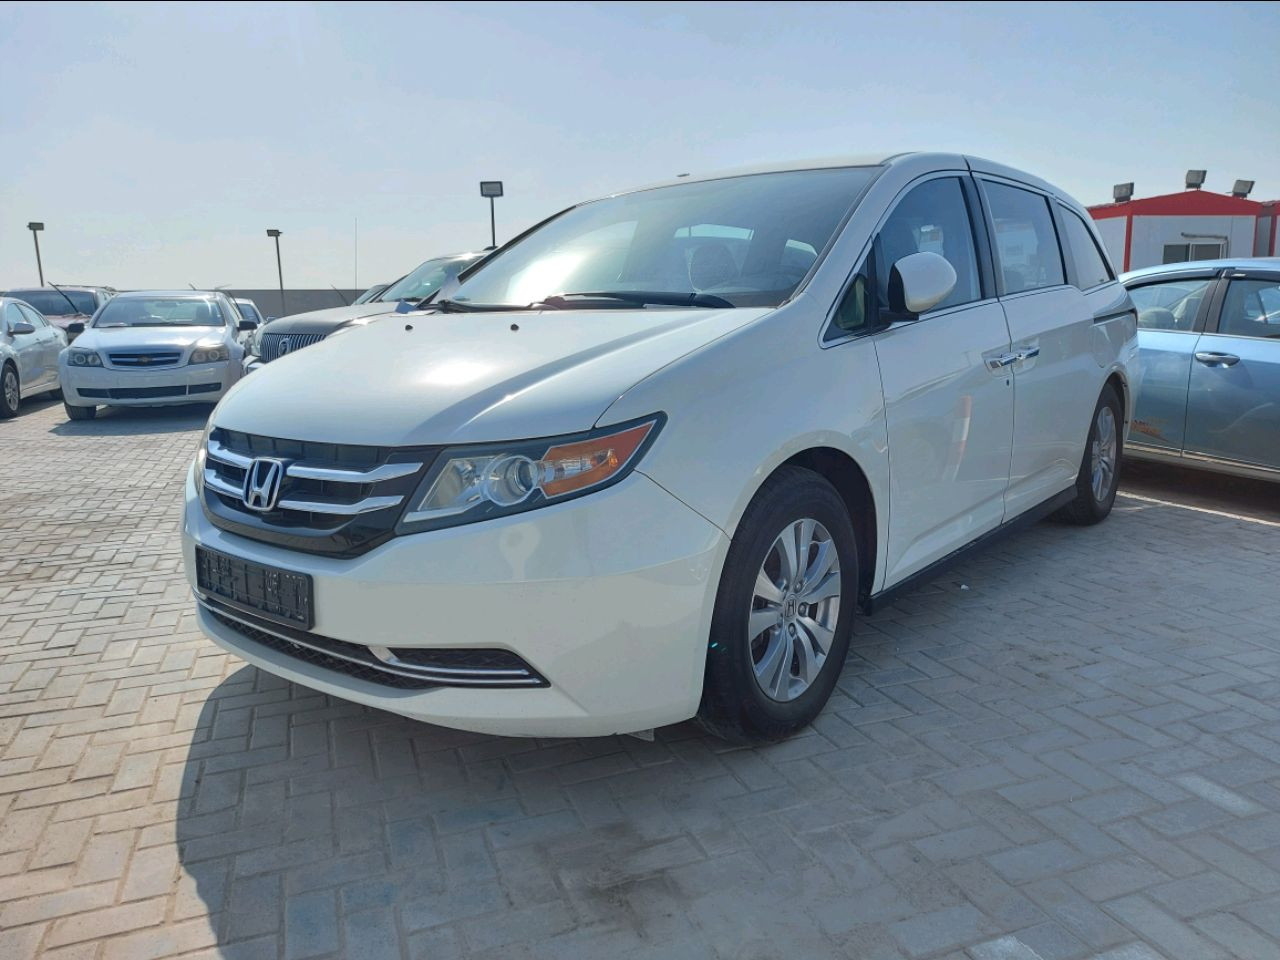 Honda Odyssey 2014 AED 29,000, GCC Spec